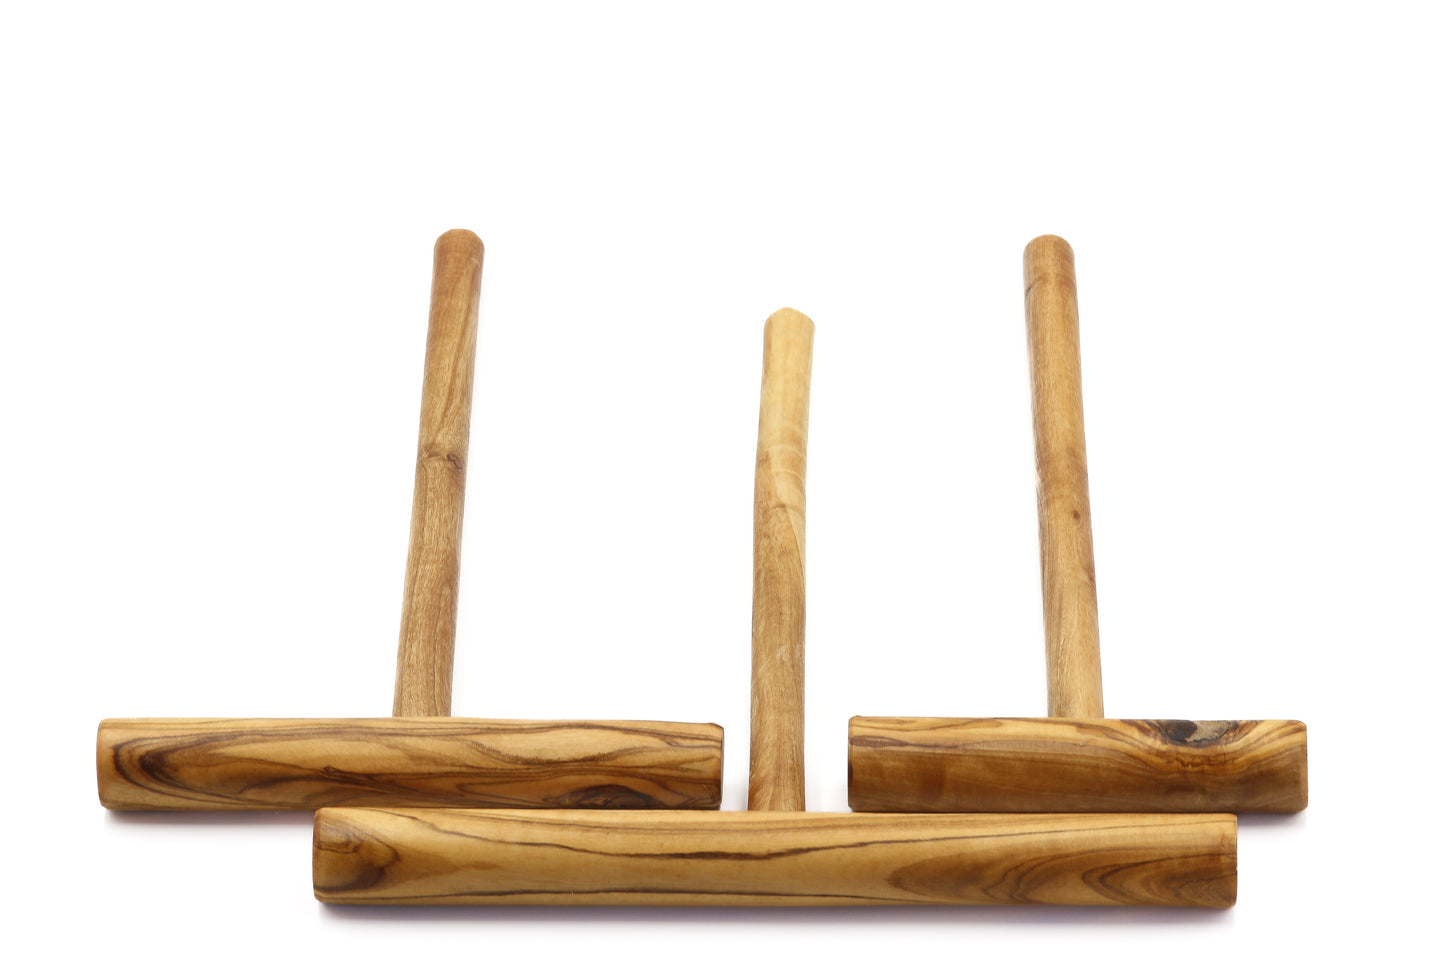 Hand-carved olive wood crêpe spreader for precise batter distribution